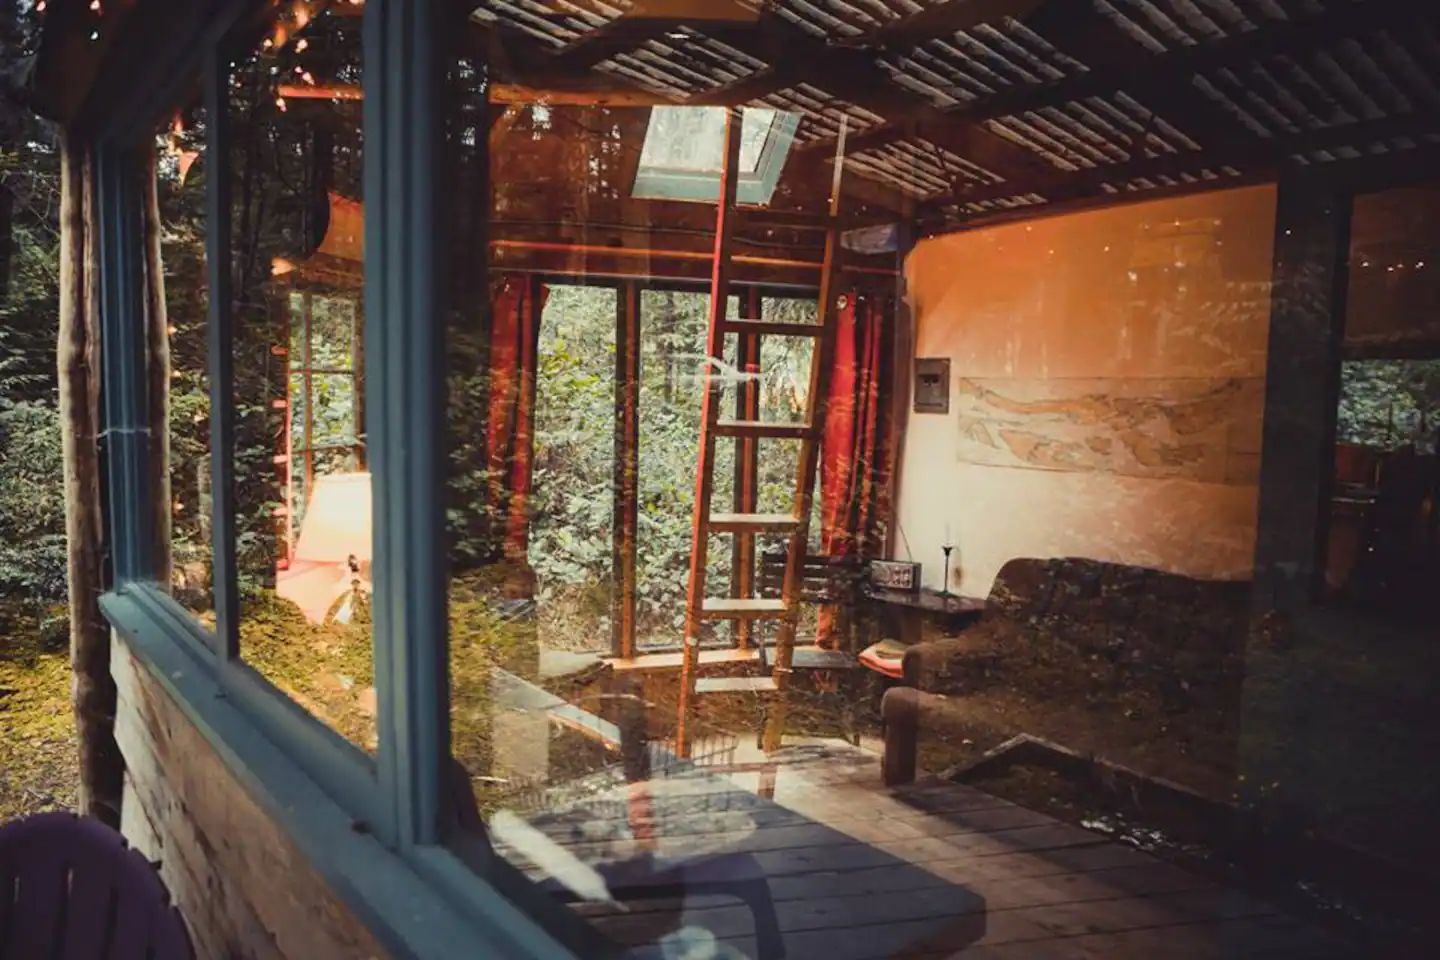 Galiano Island rustic cabin unique airbnb stays